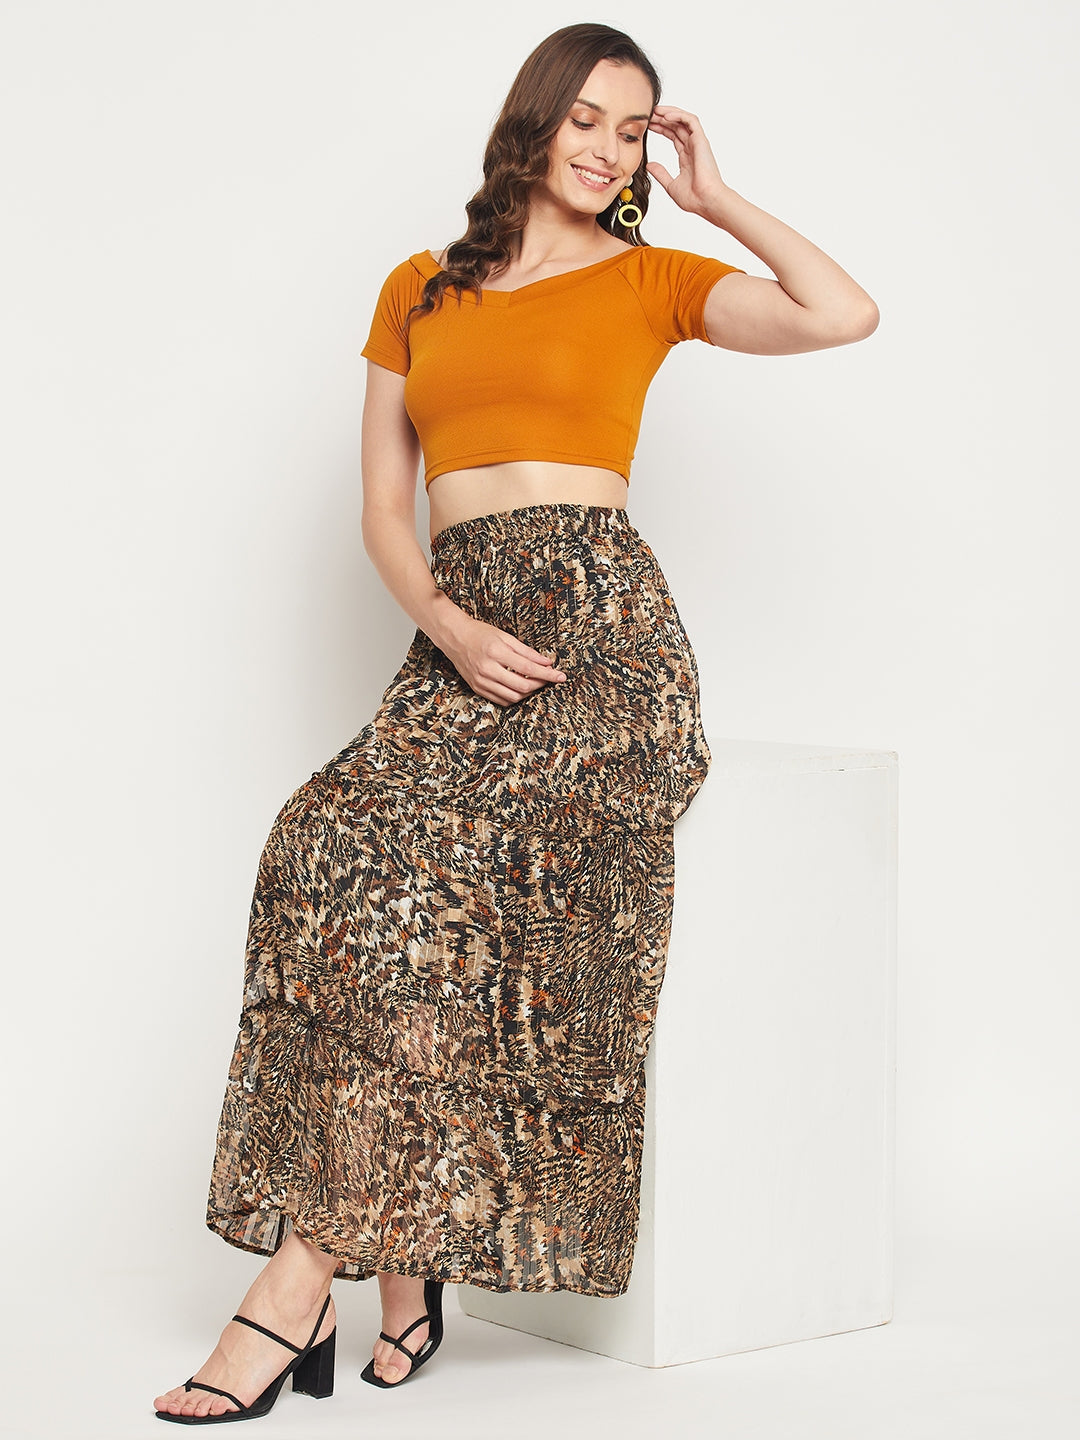 Animal Print Gold Lurex Chiffon Skirt - Brown